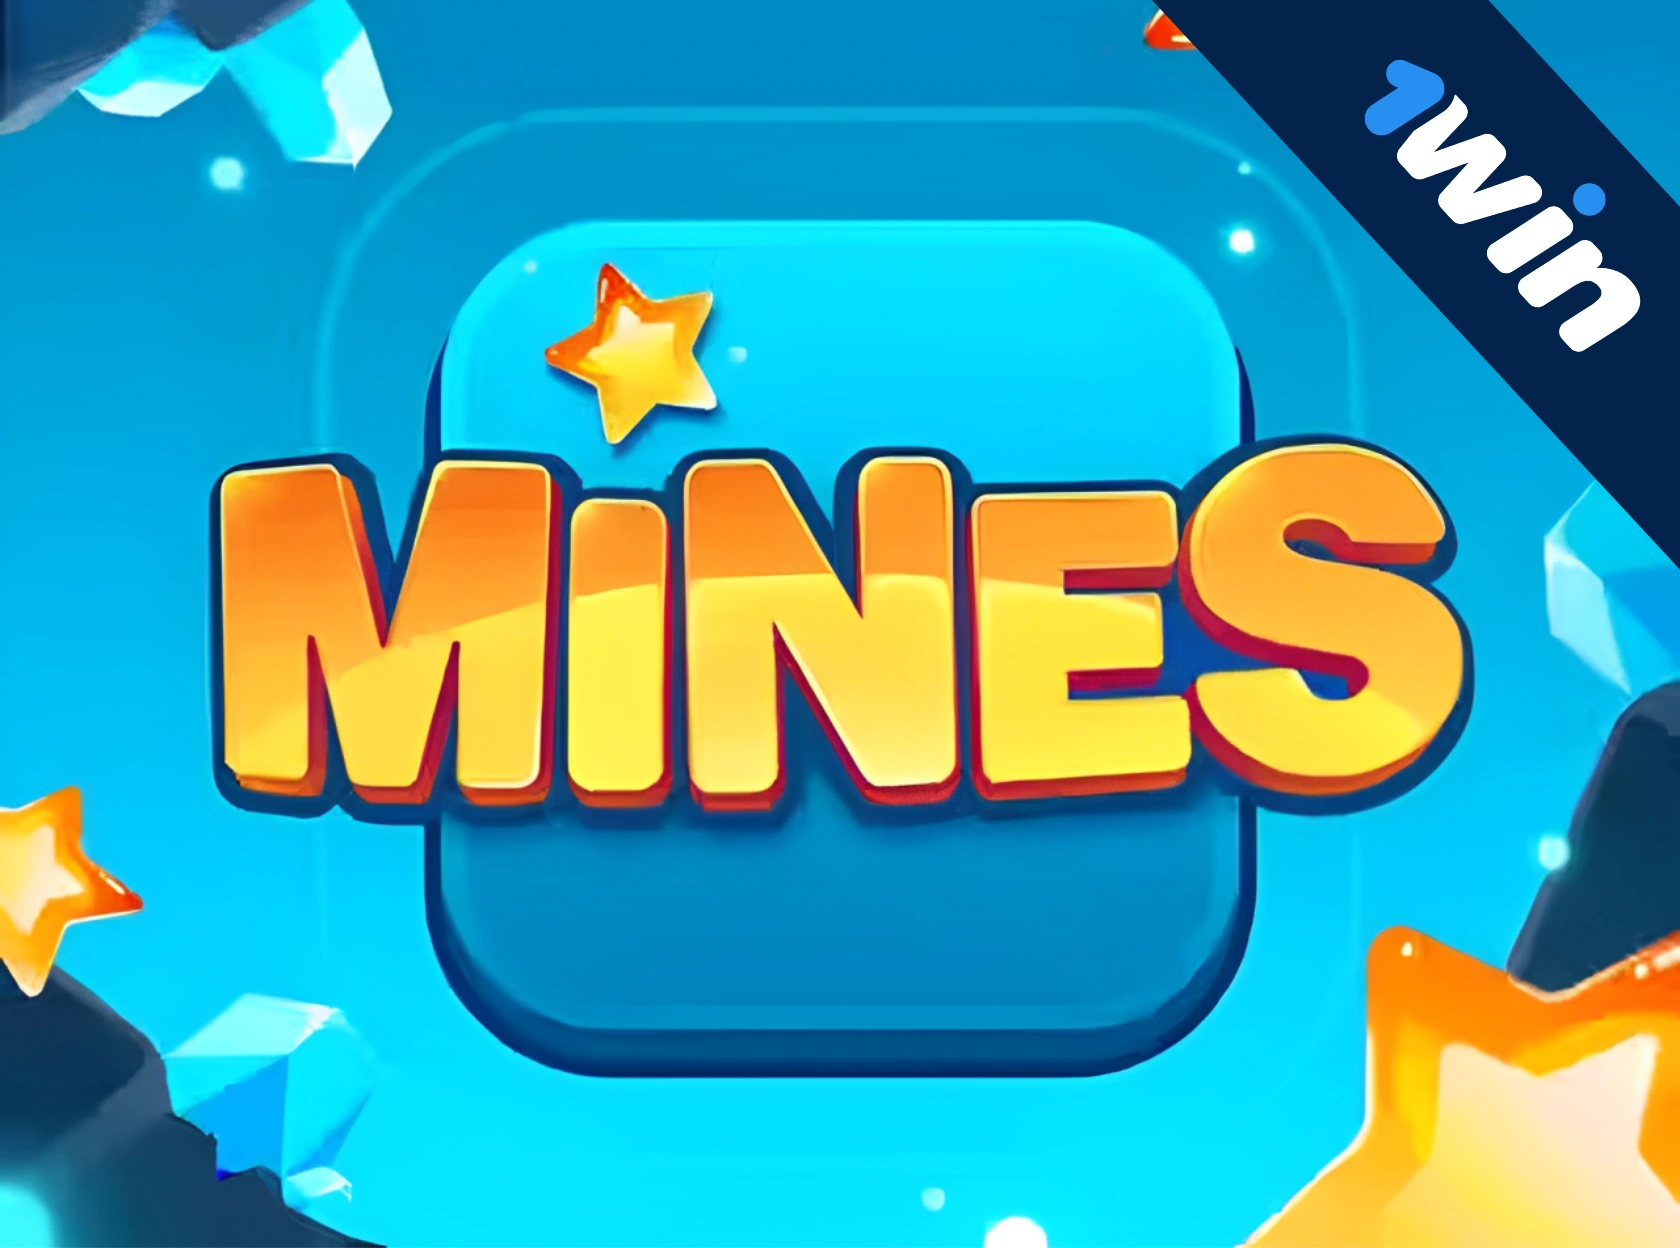 1win Mines - पैसे के लिए माइनस्वीपर खेलें!